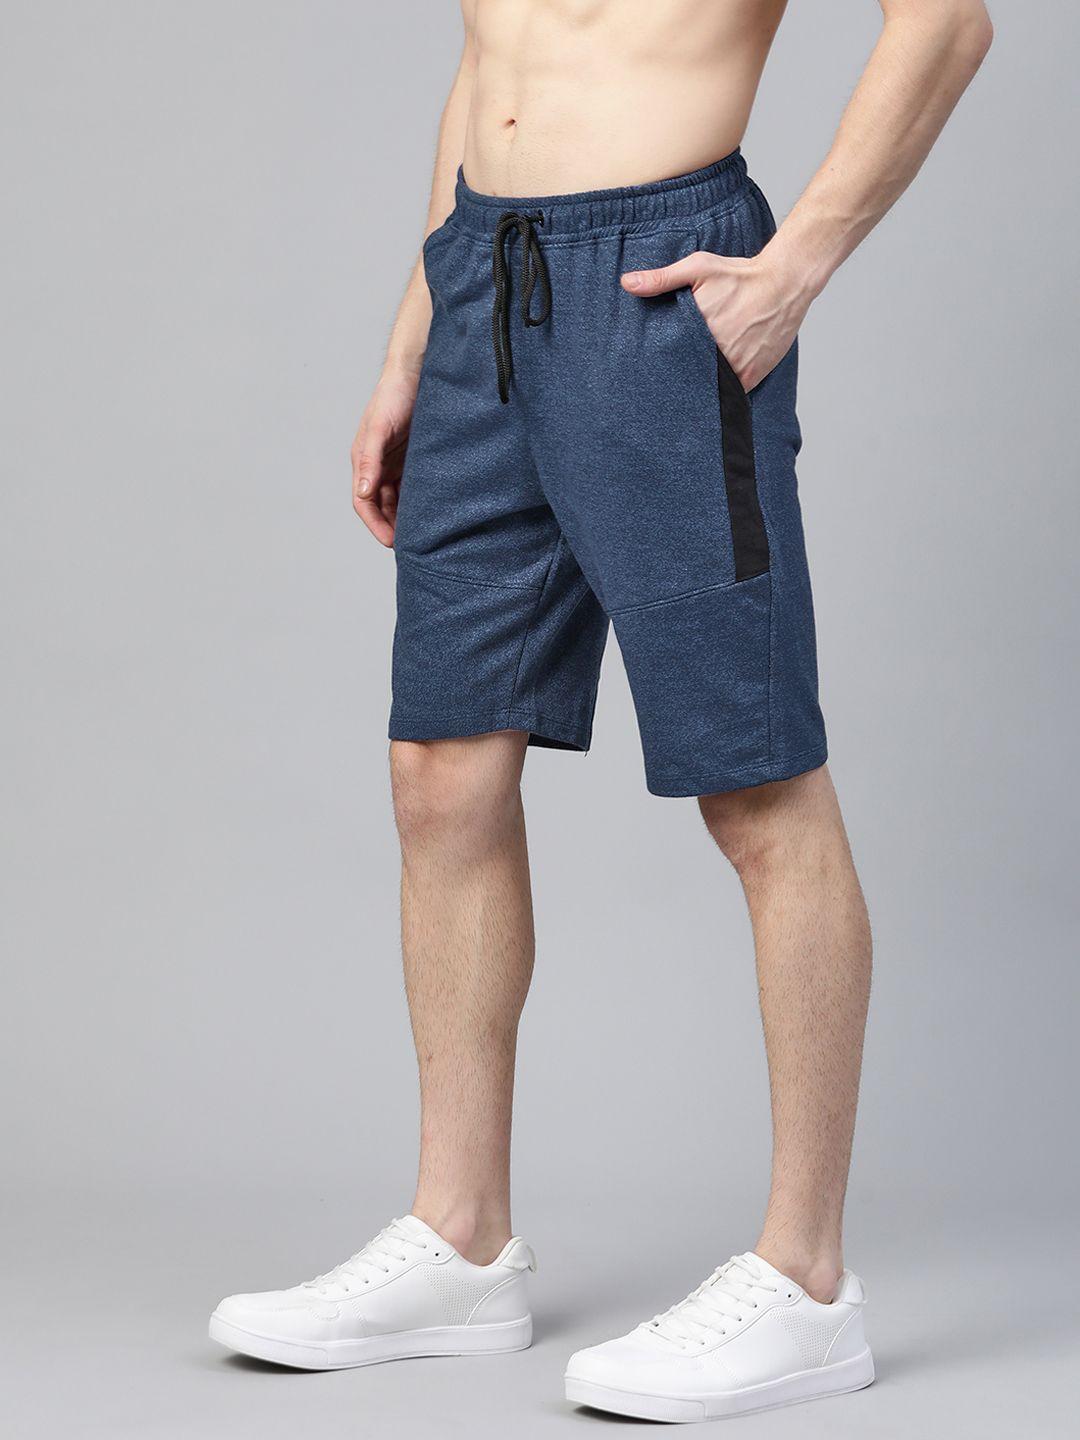 harvard men navy blue mid-rise regular shorts